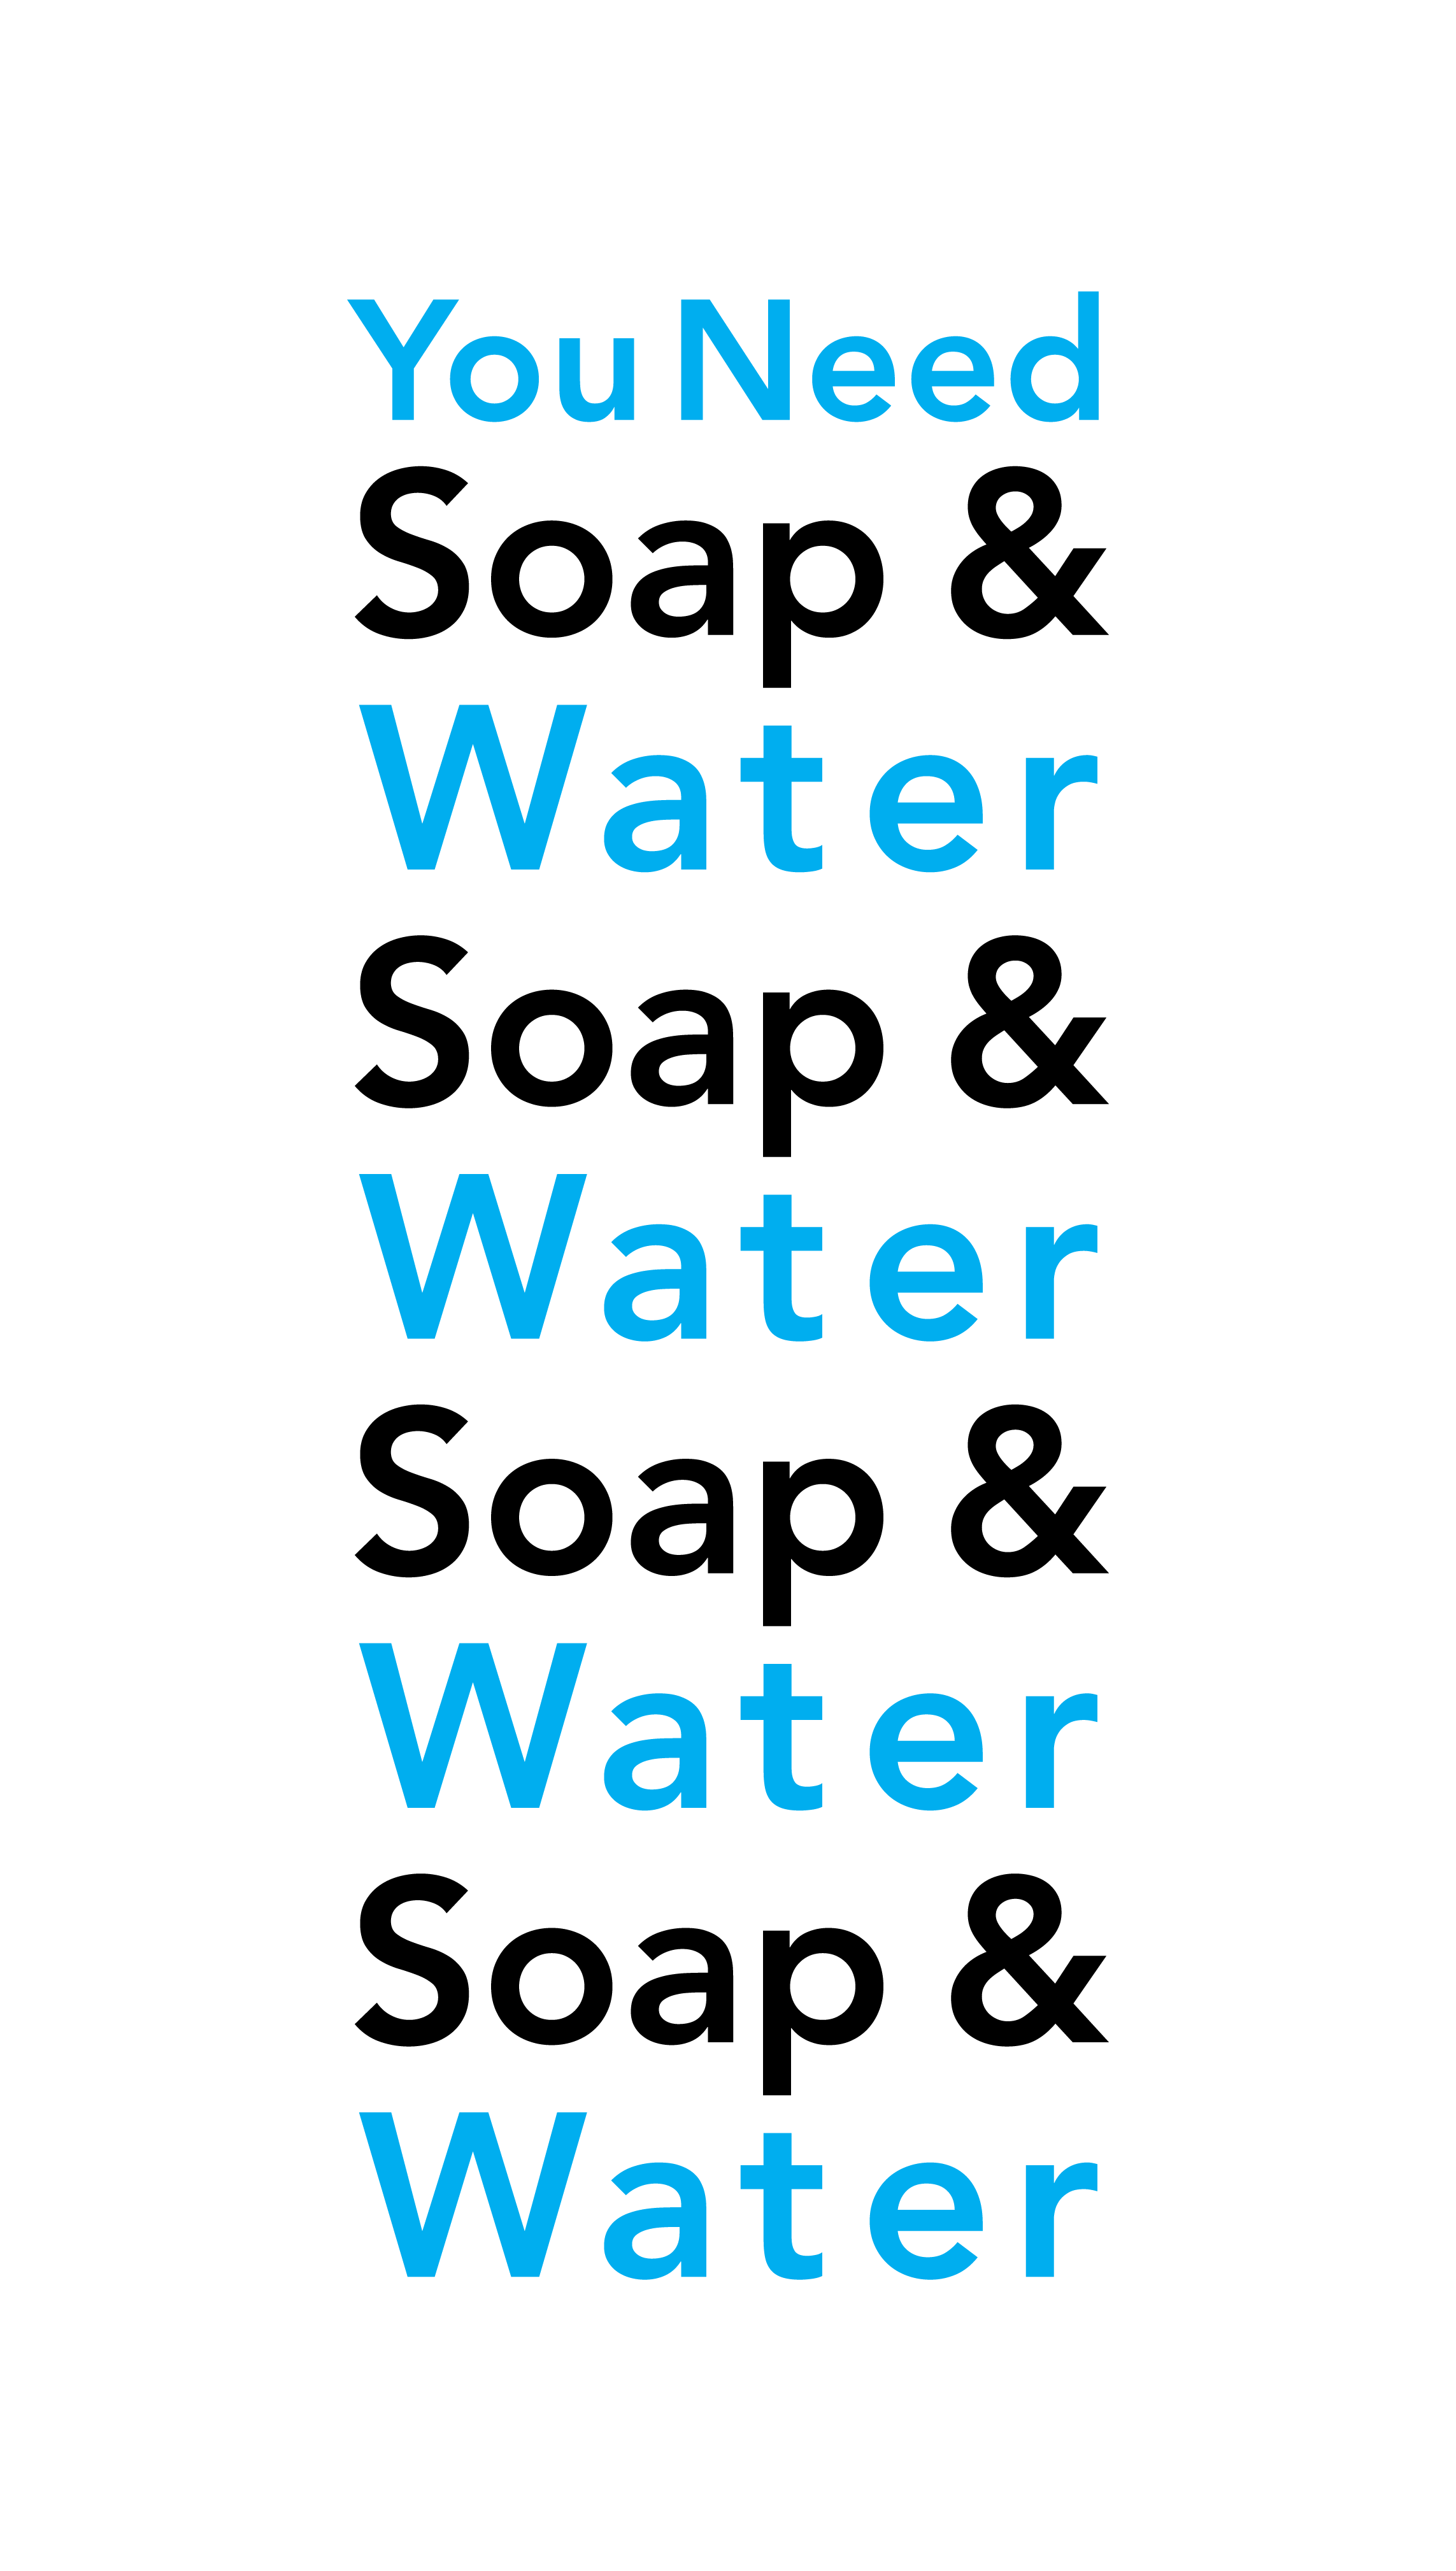 You Need Soap & Water Soap & Water Soap & Water Soap & Water